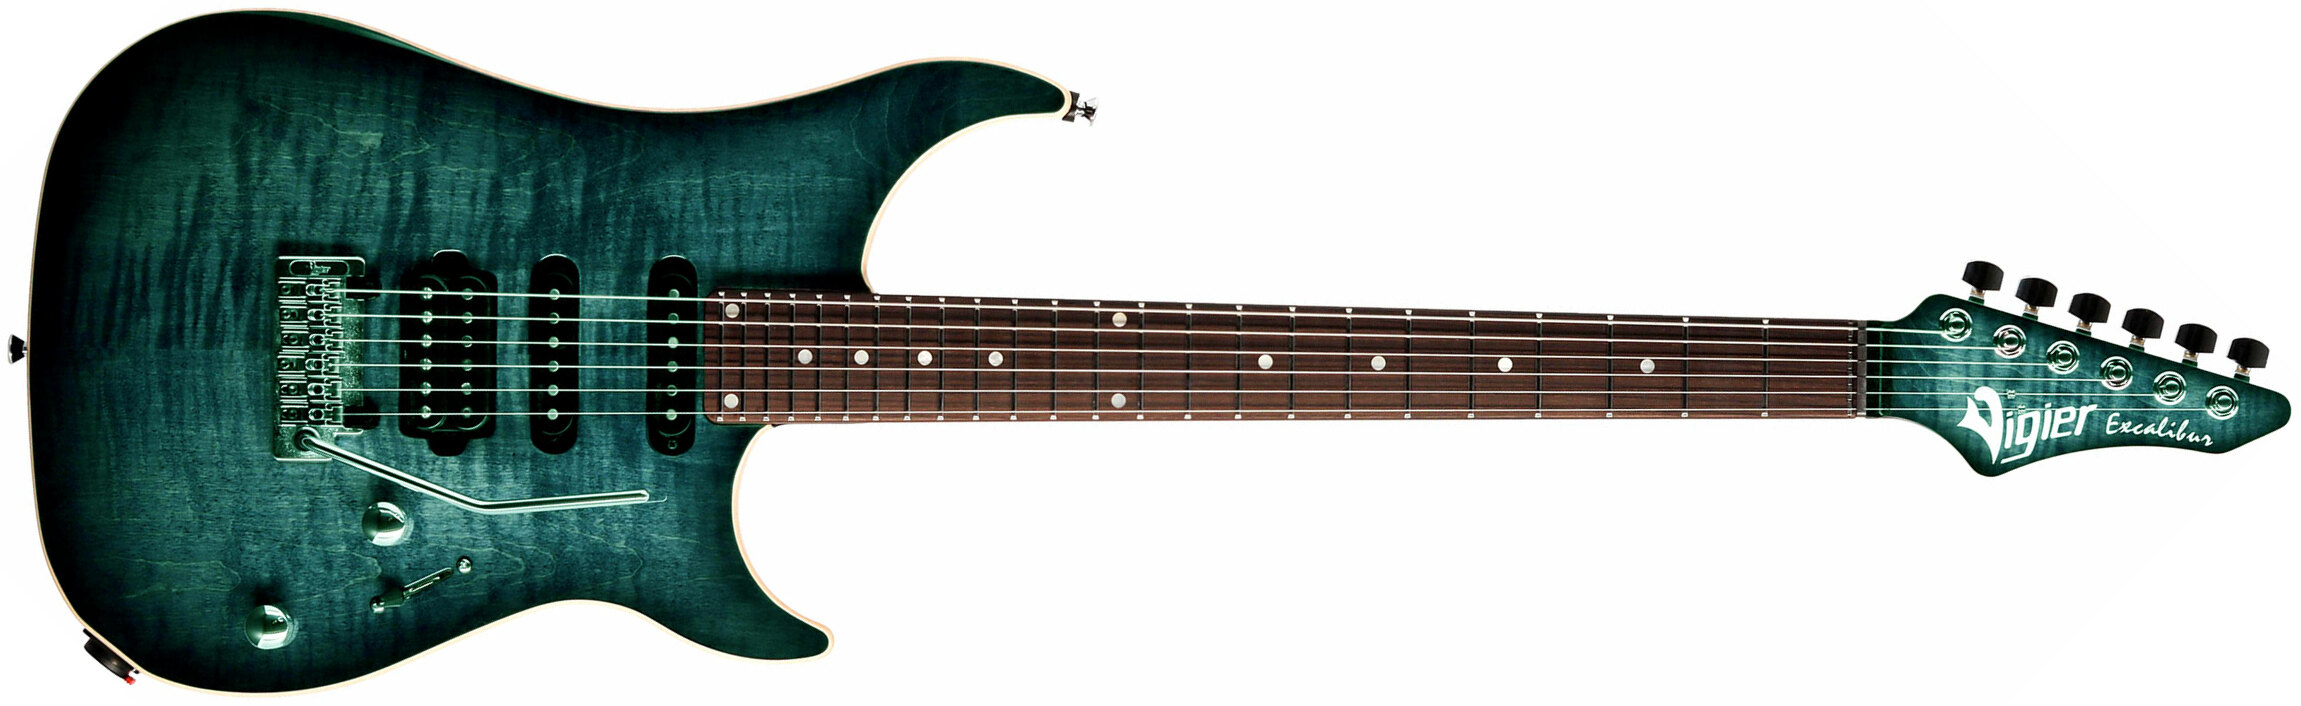 Vigier Excalibur Ultra Blues Hss Trem Rw - Deep Blue - Guitarra eléctrica con forma de str. - Main picture